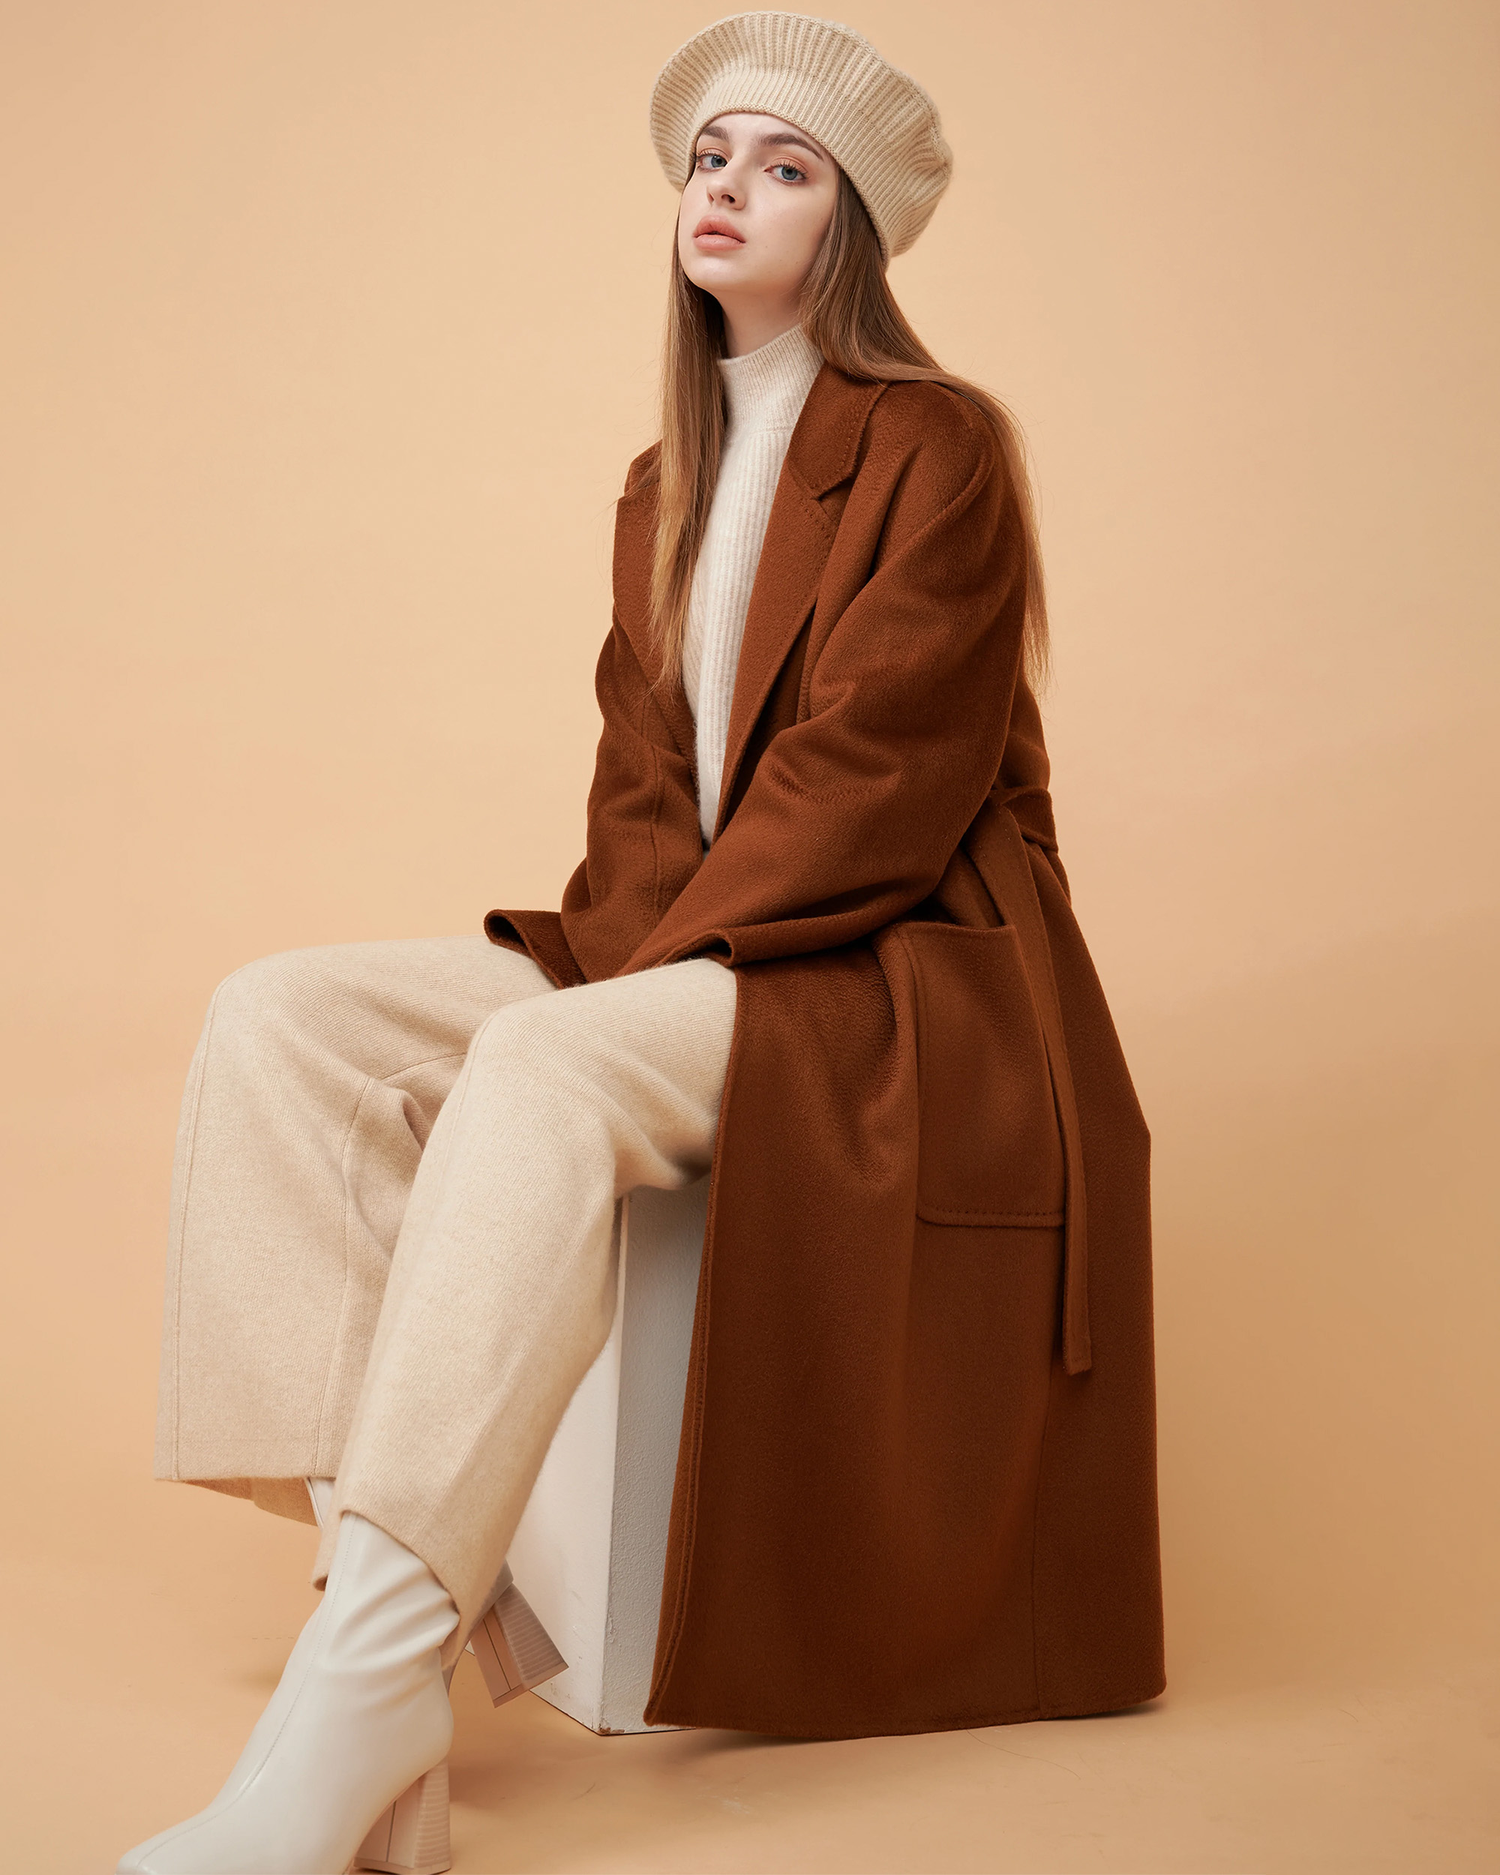 cashmere coat hat pants boots heels vest sweater organic blended cashmere fashion turtleneck wardrobe elegant styling stylish 